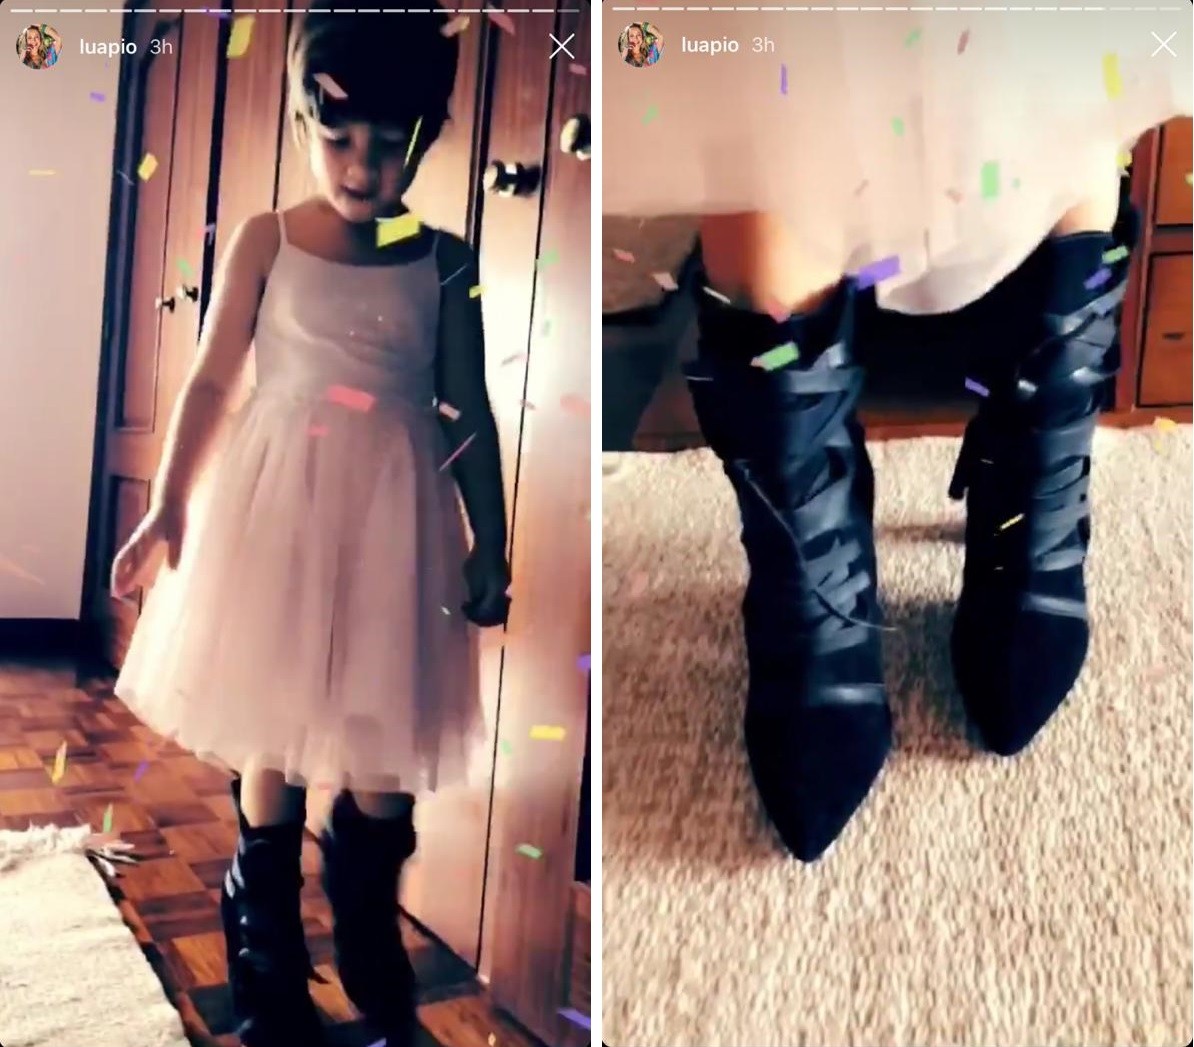 Liz, filha de Luana Piovani, usa as botas da mãe (Foto: Reprodução/Instagram)